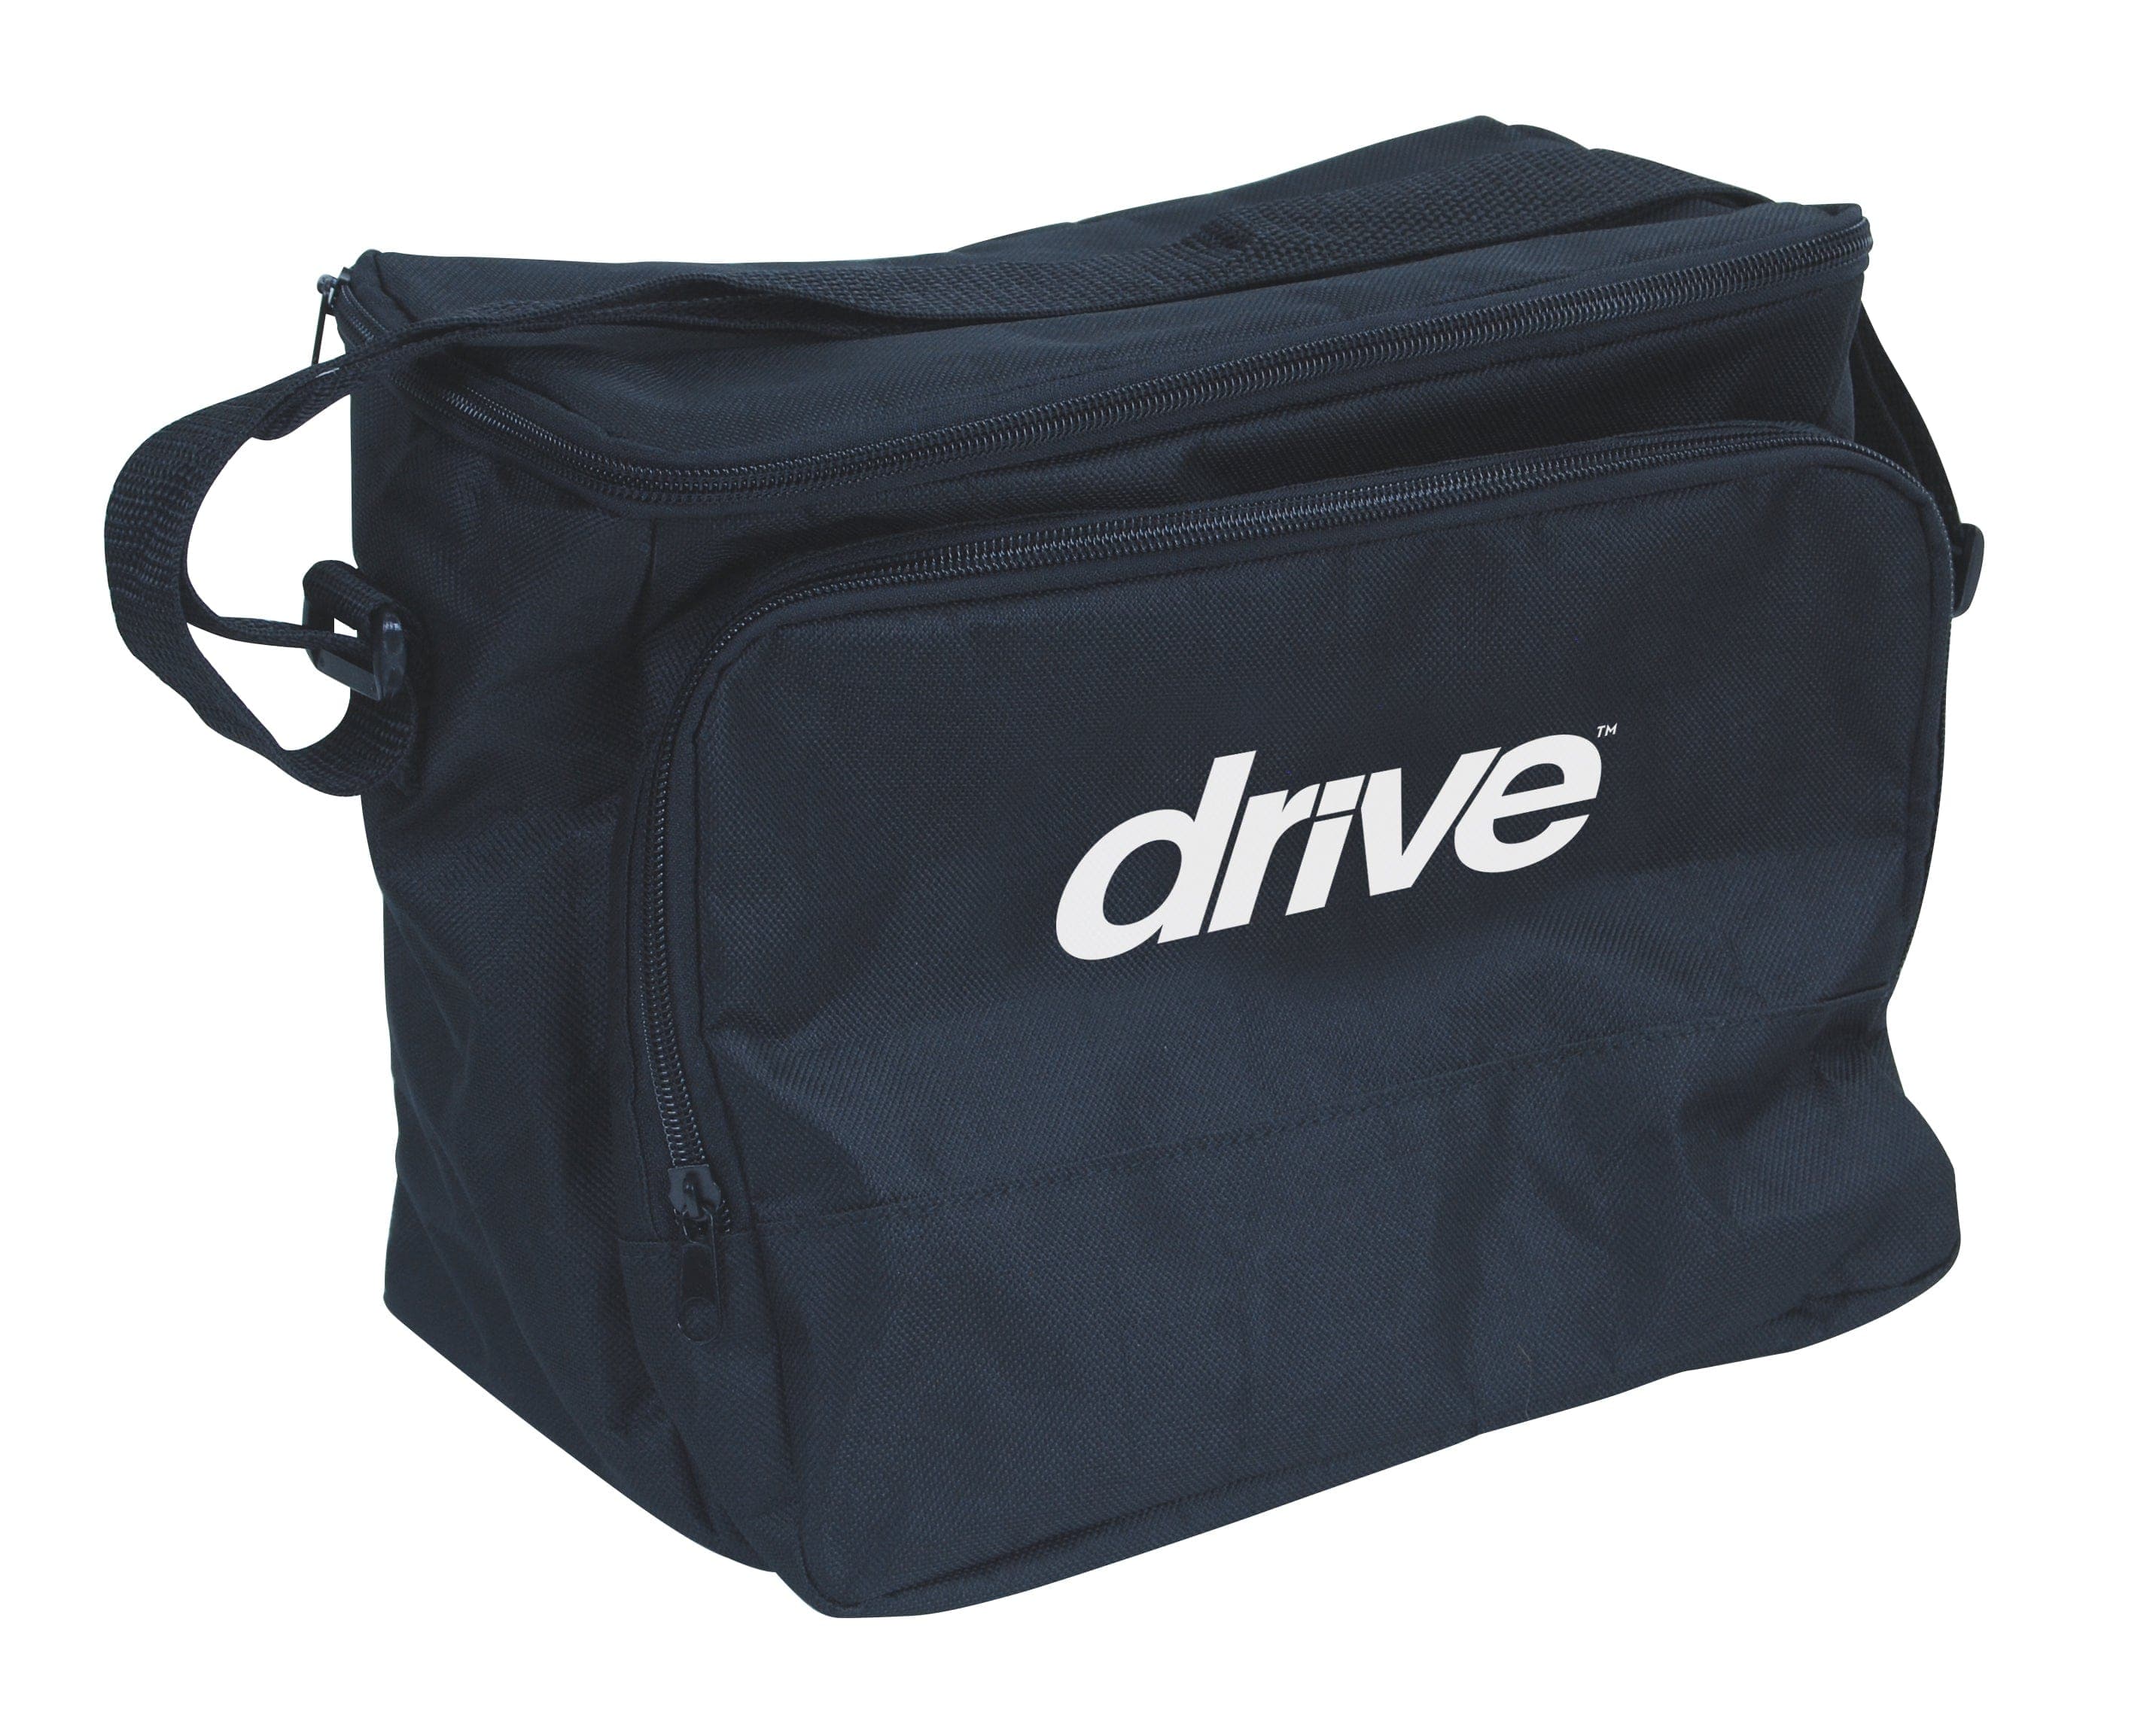 Drive Medical Drive Medical Nebulizer Carry Bag 18031